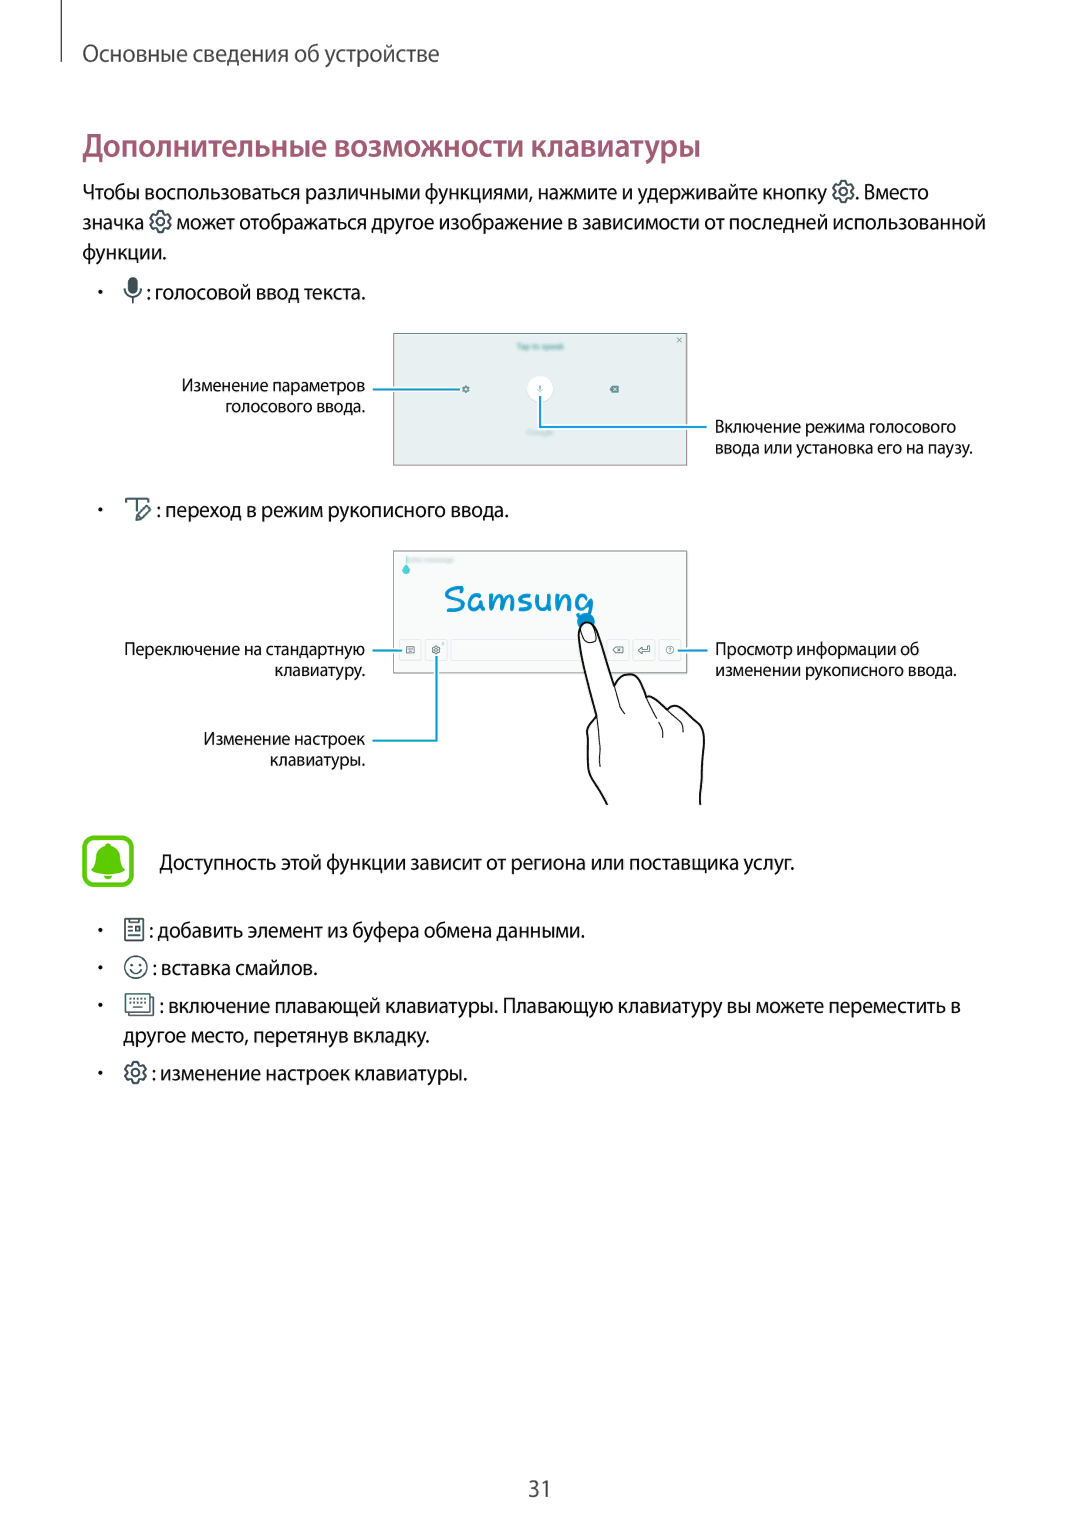 Samsung SM-T580NZKASEB, SM-T580NZWASEB manual Дополнительные возможности клавиатуры, Переход в режим рукописного ввода 